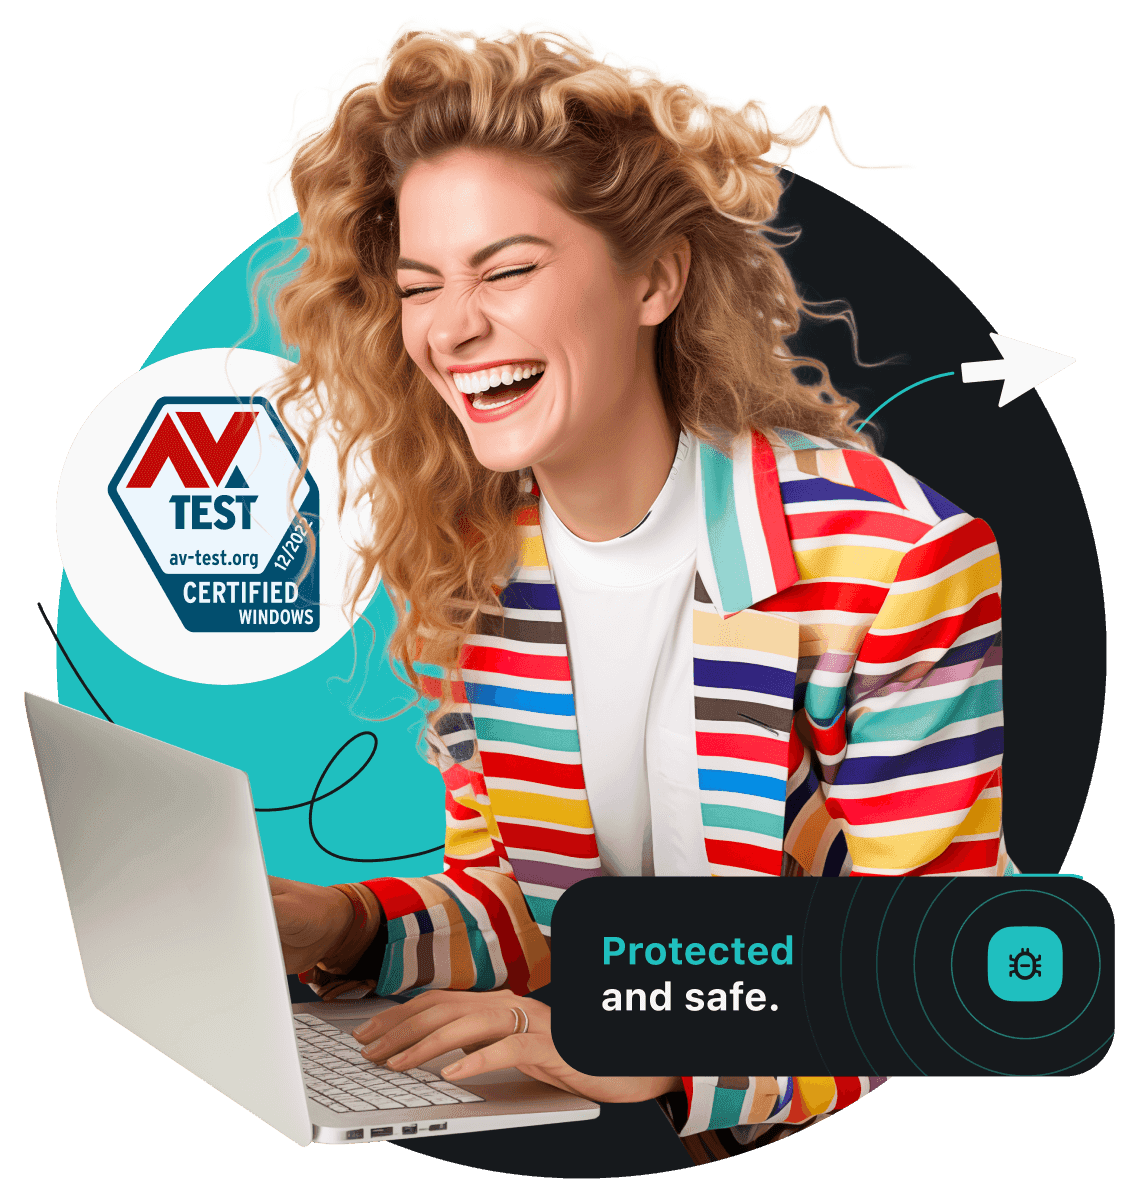 Uśmiechnięta kobieta w kurtce w kolorowe paski przegląda internet na laptopie. Po lewej stronie znajduje się odznaka certyfikacji AV test.